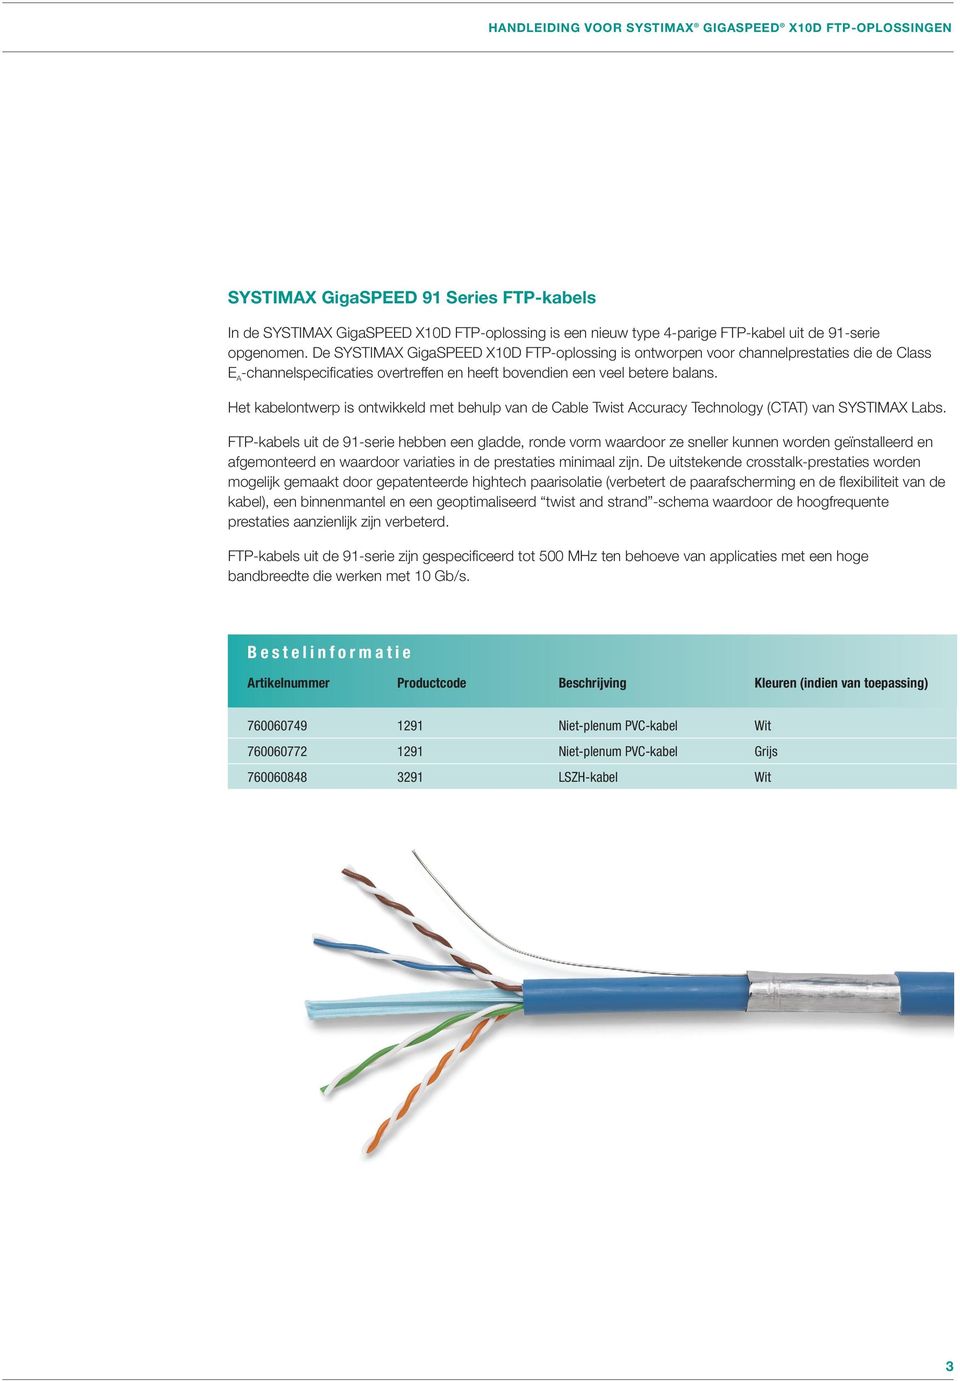 Het kabelontwerp is ontwikkeld met behulp van de Cable Twist Accuracy Technology (CTAT) van SYSTIMAX Labs.